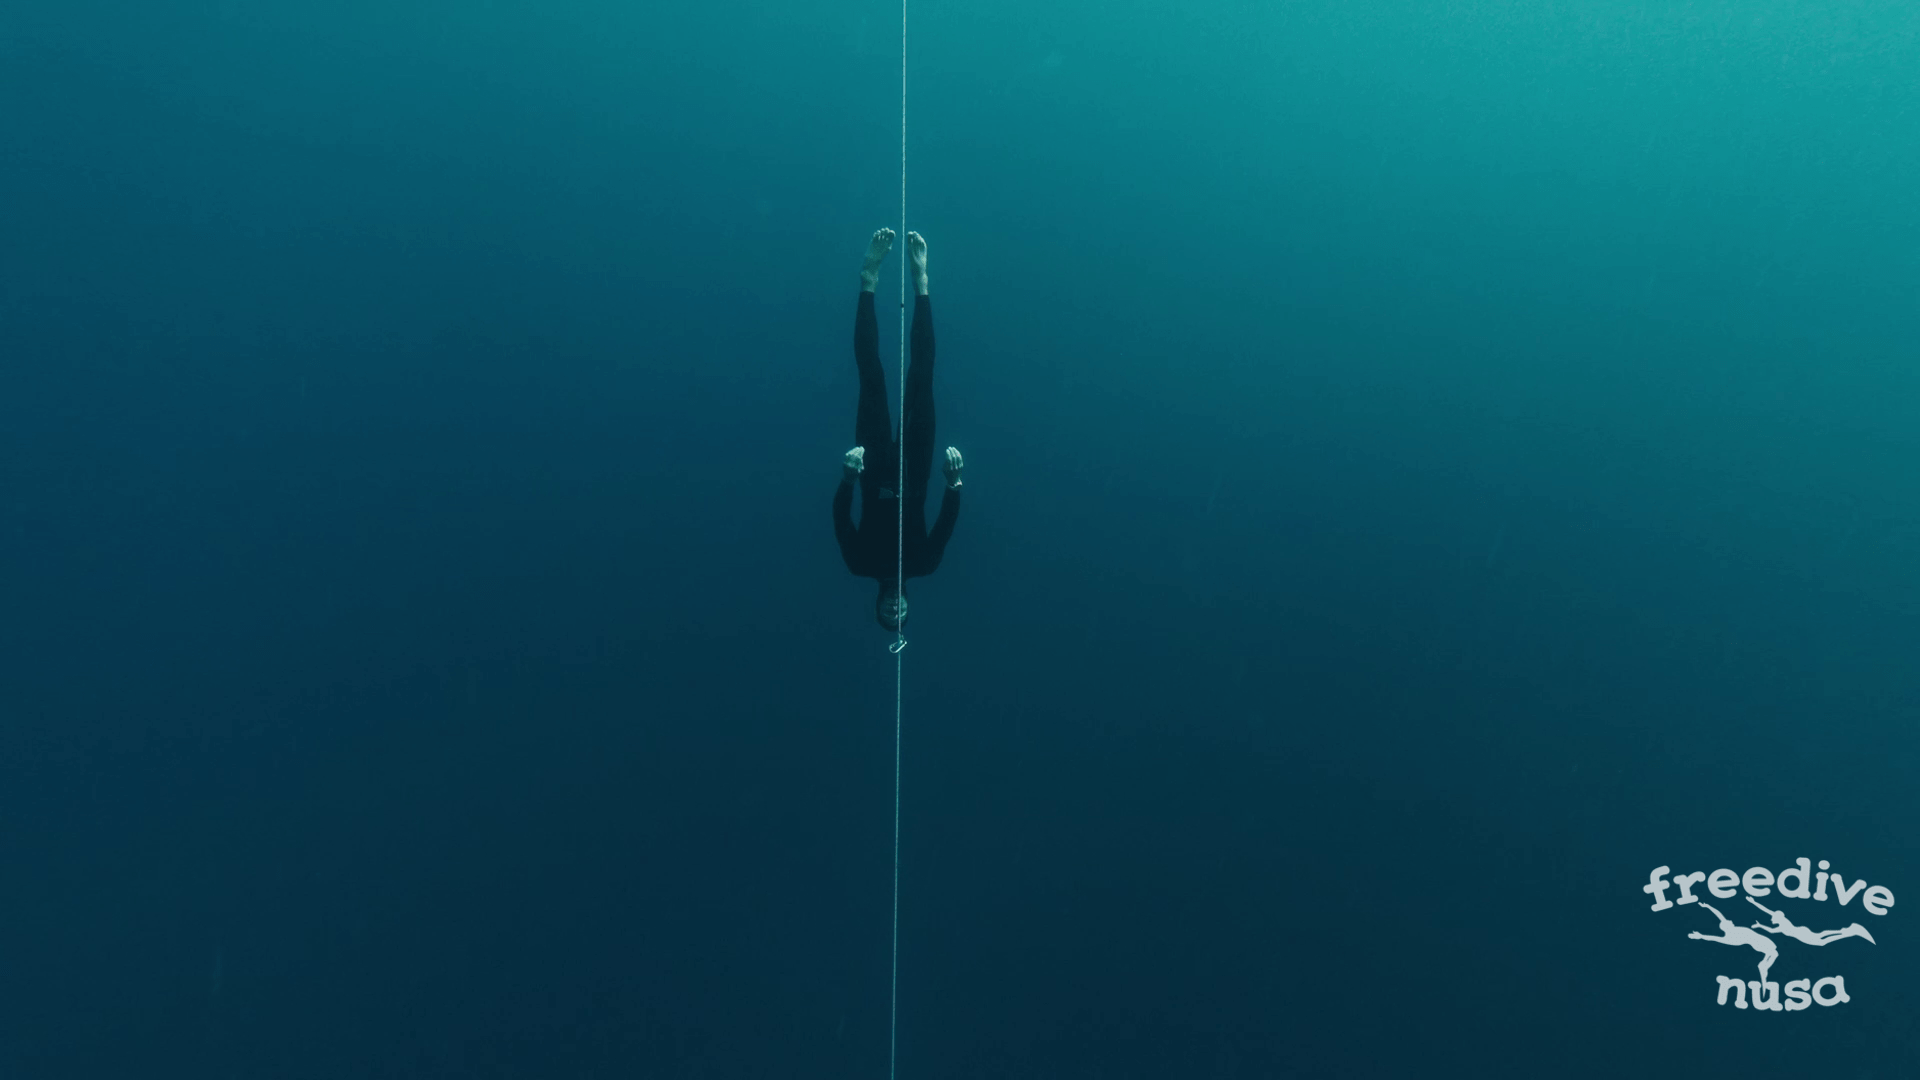 No-Fins Freediving